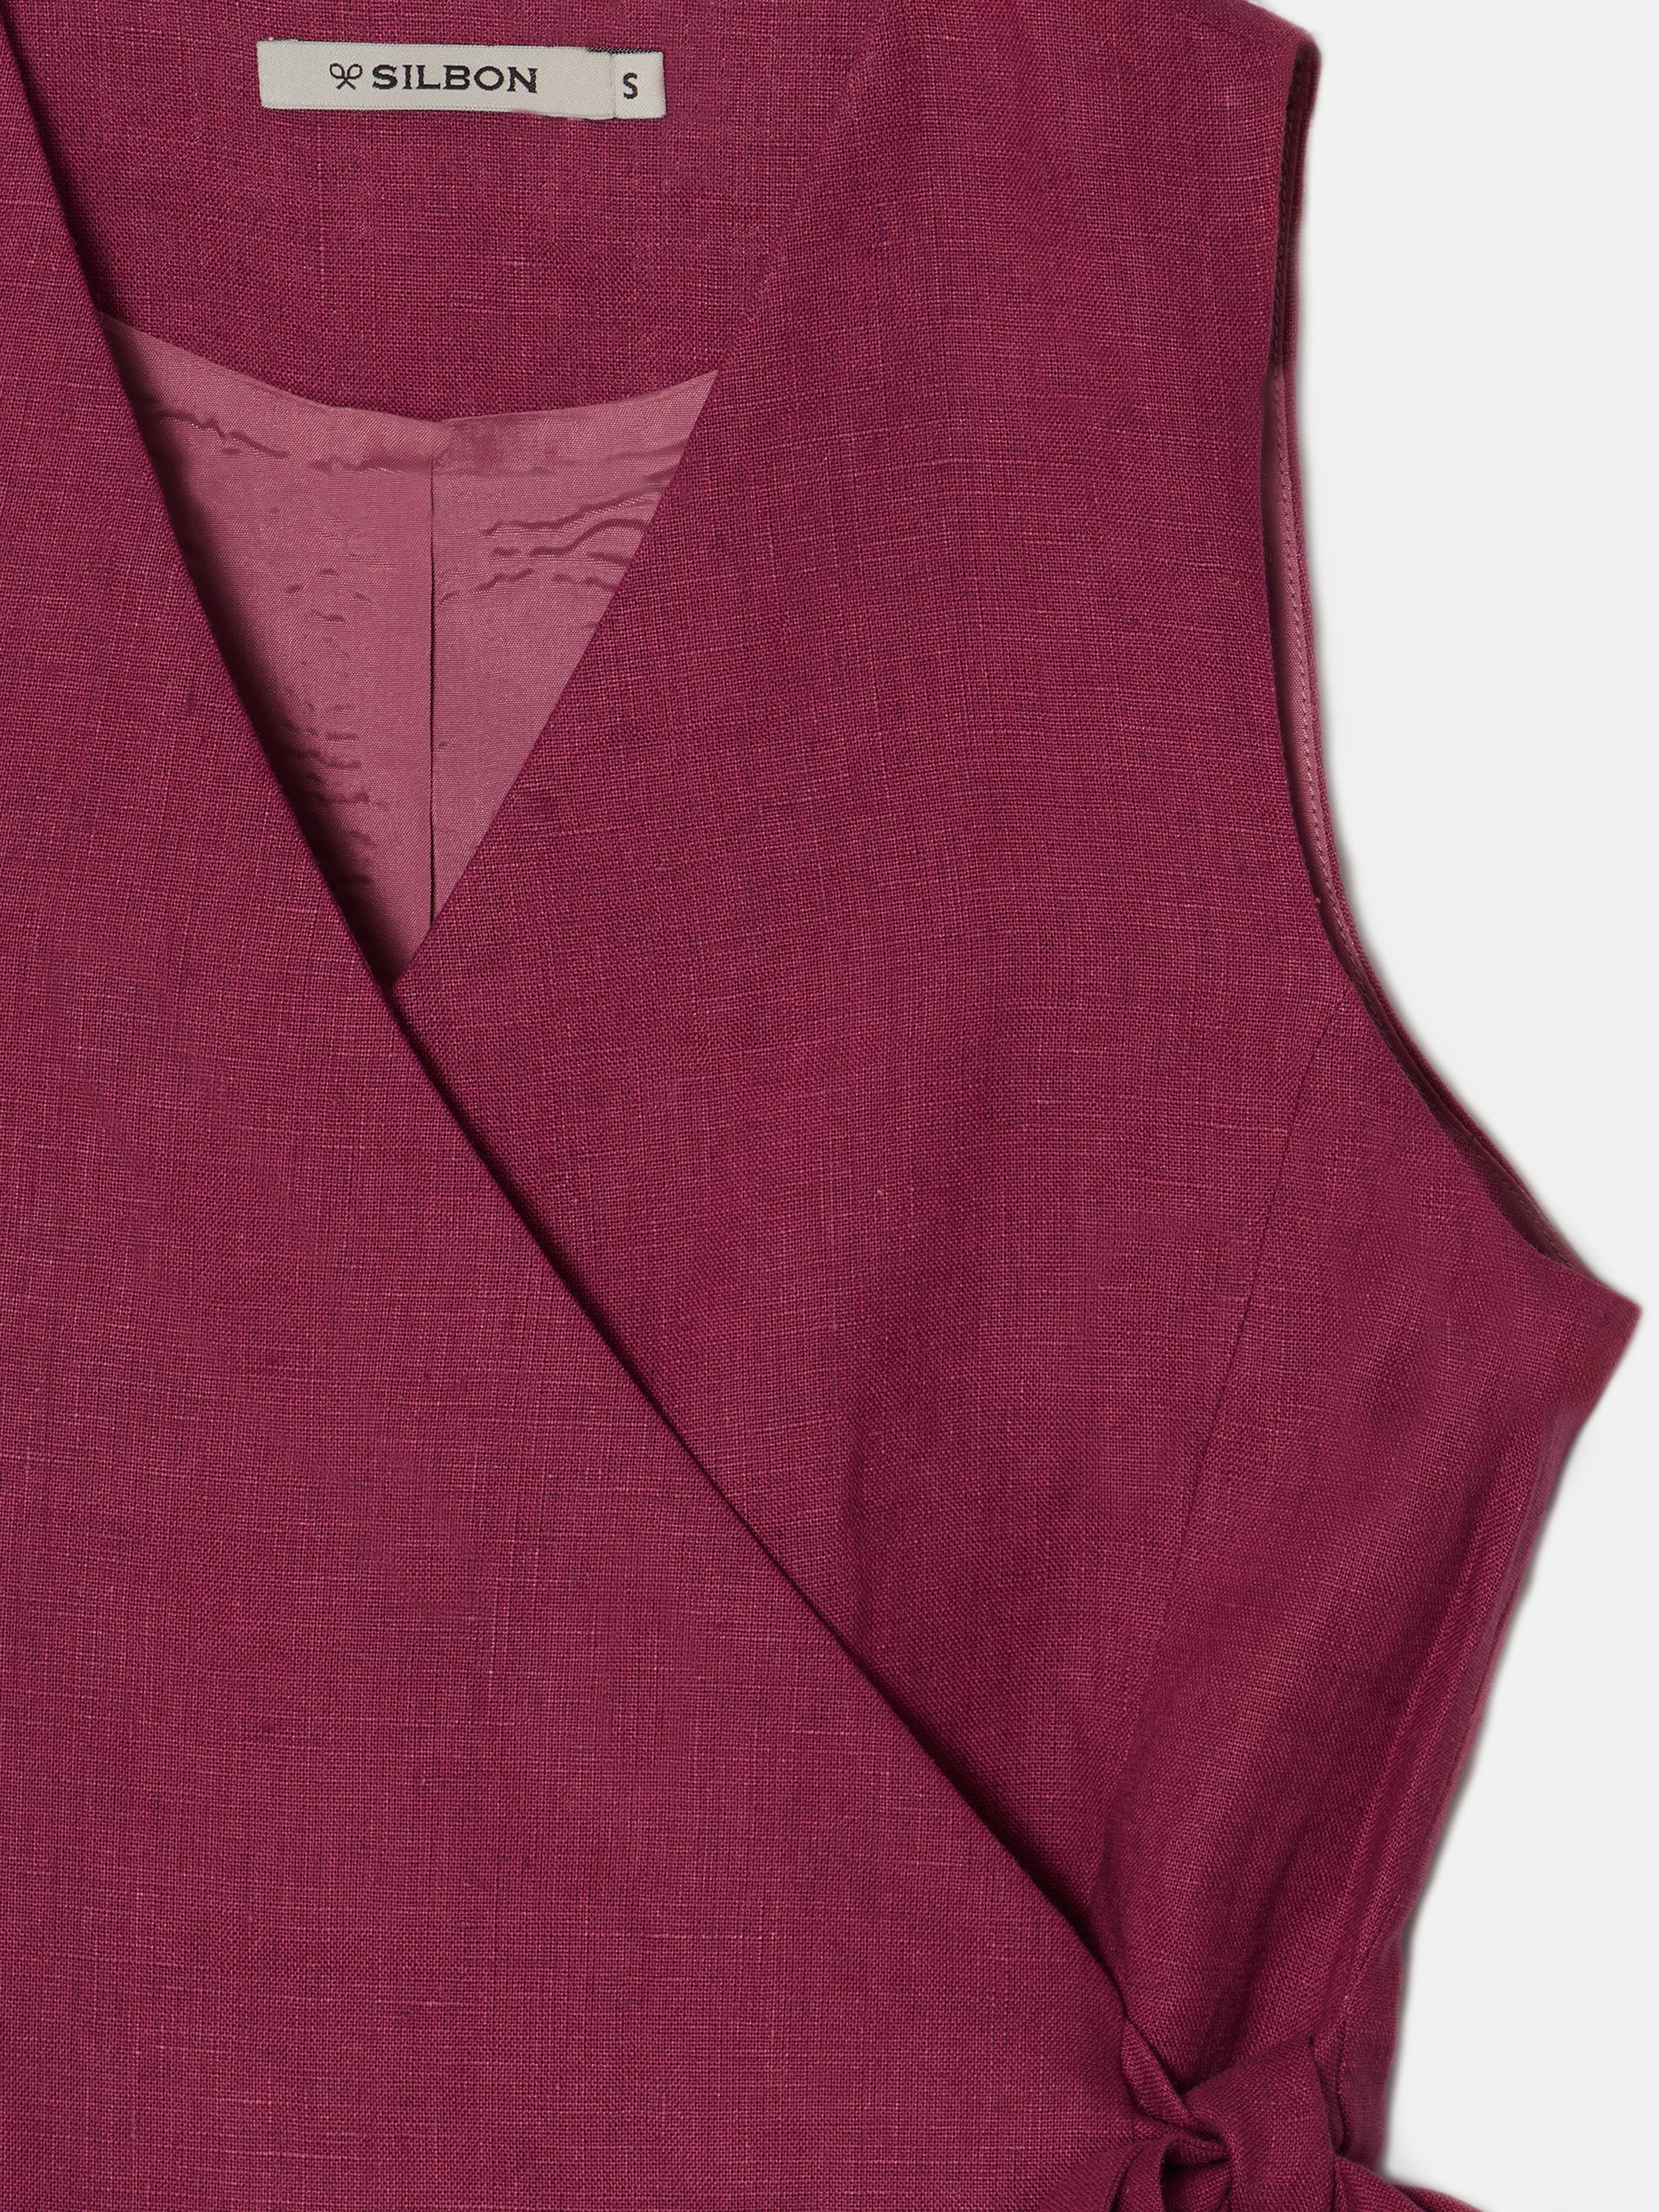 Raspberry linen laced vest